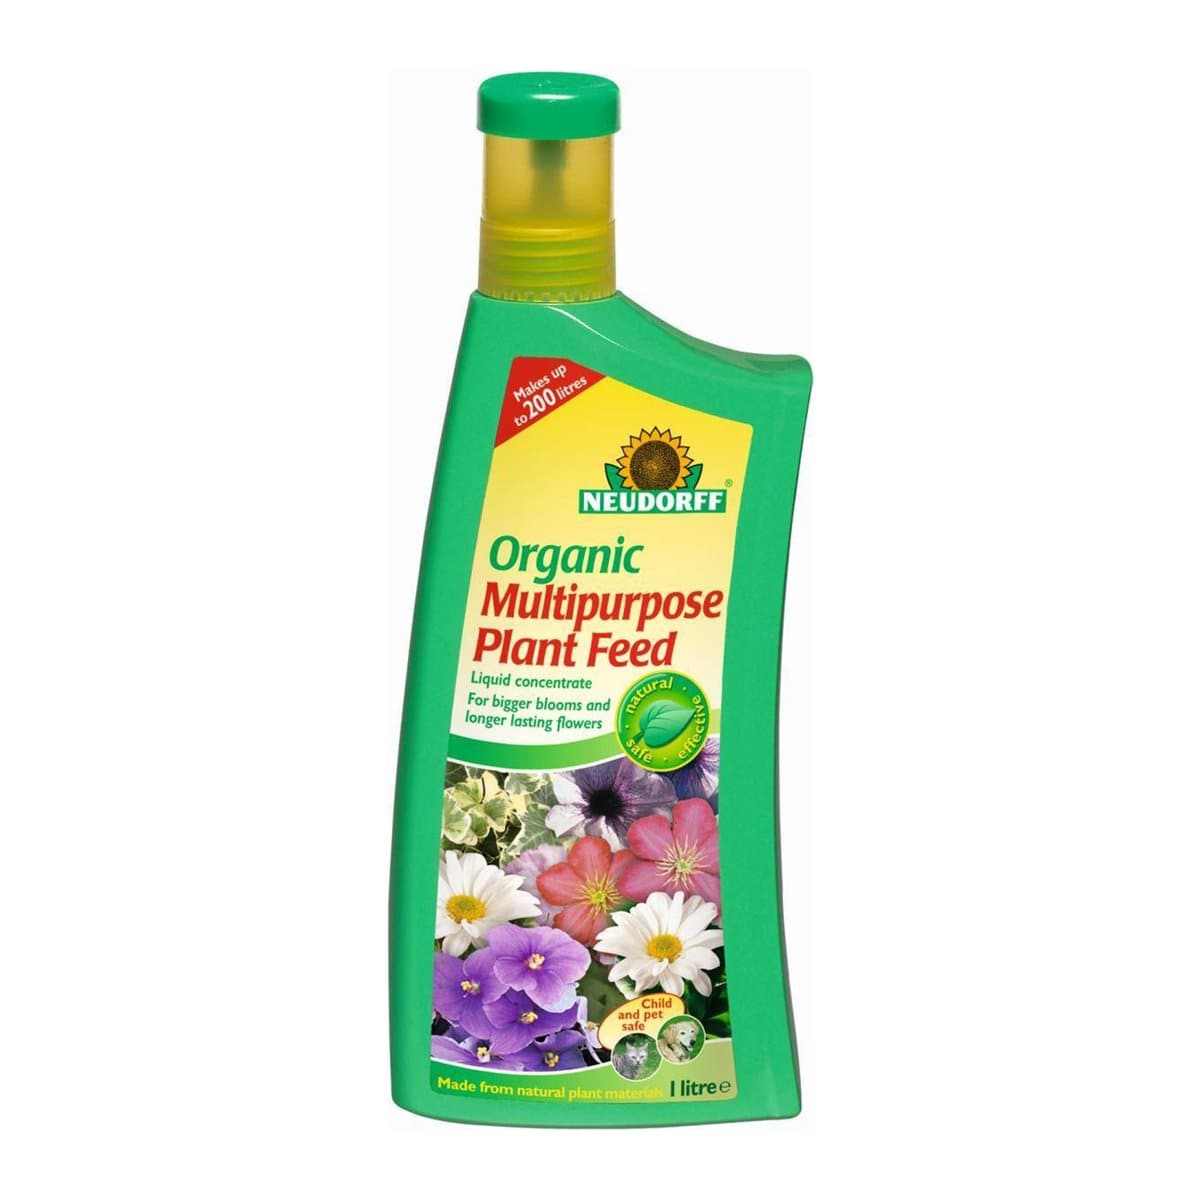 Neudorff Organic Multipurpose Plant Food